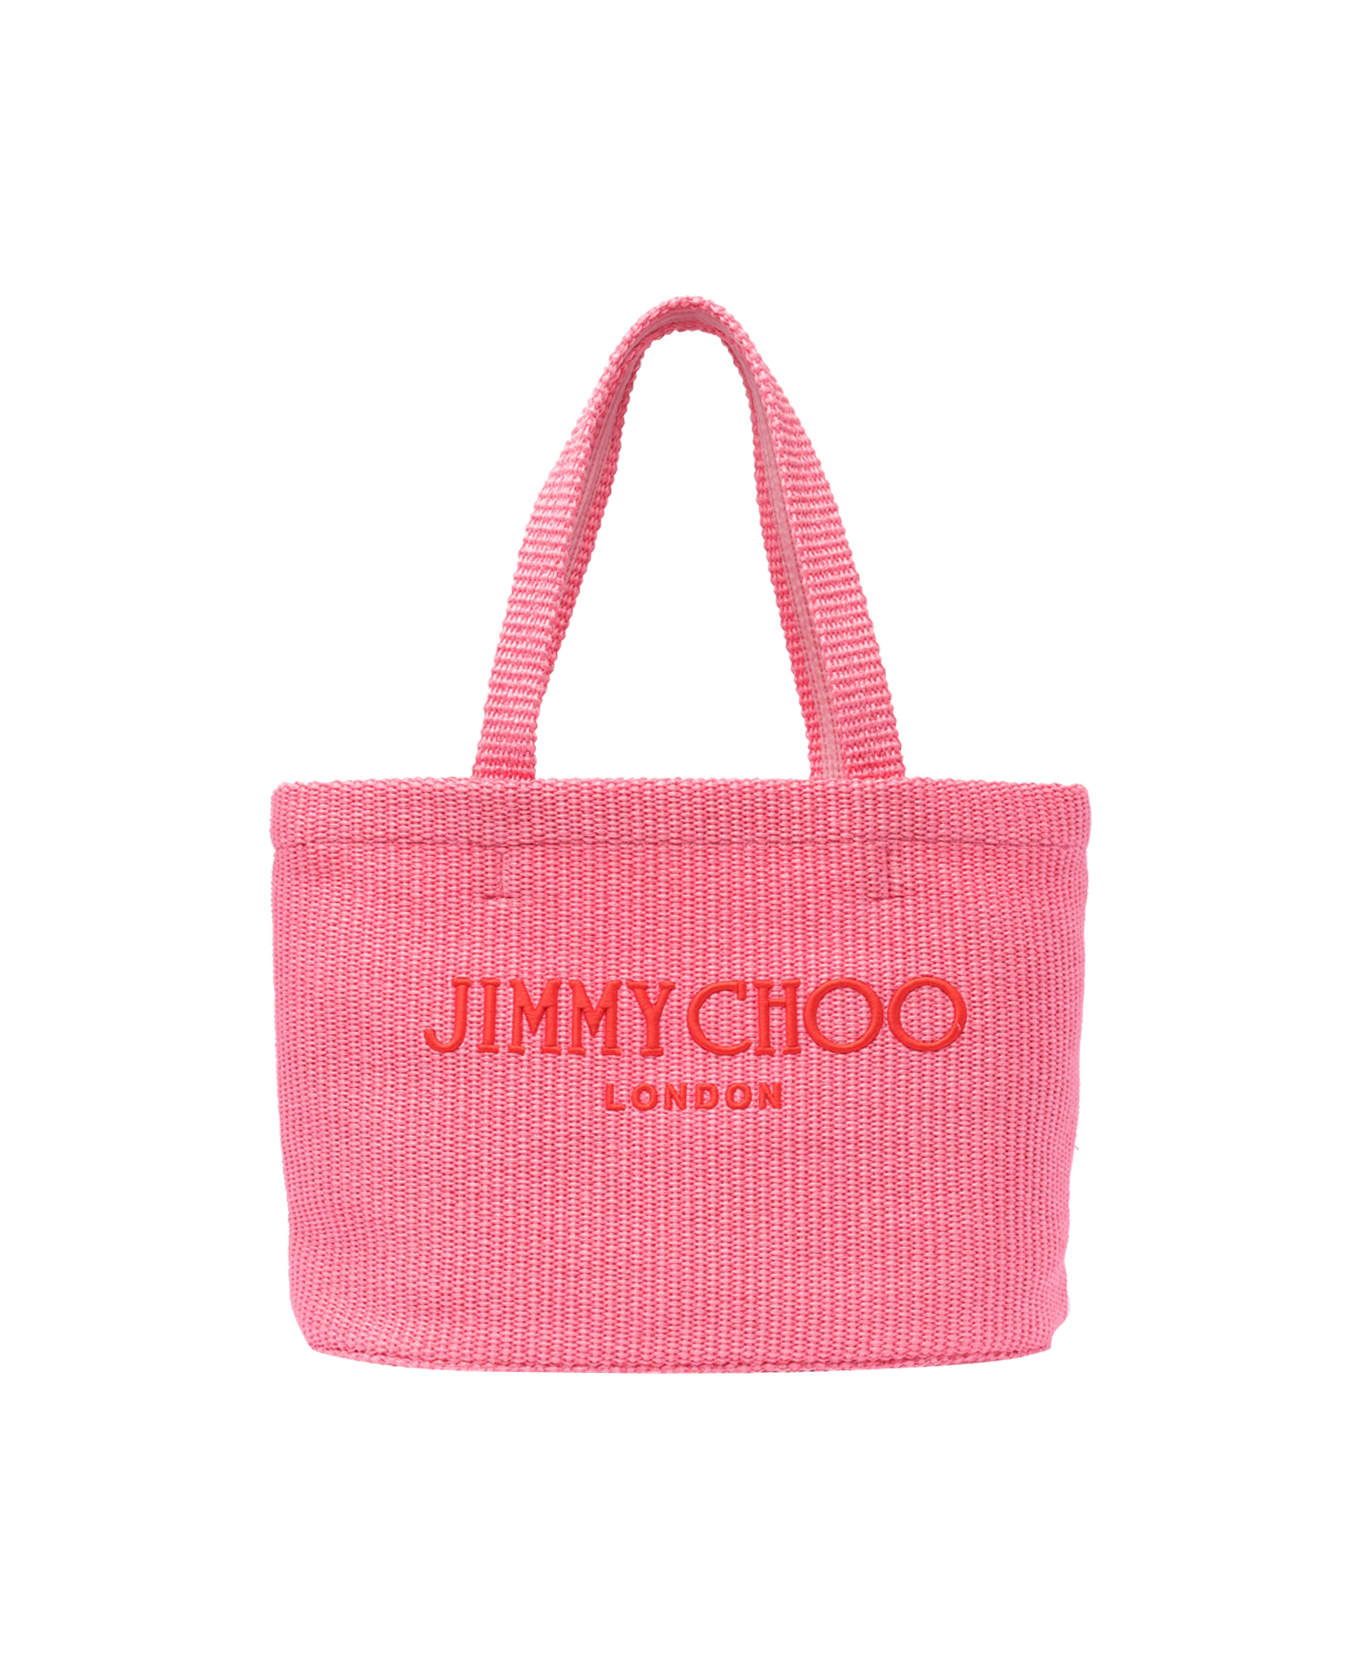 Jimmy Choo E/w Beach Tote - Pink